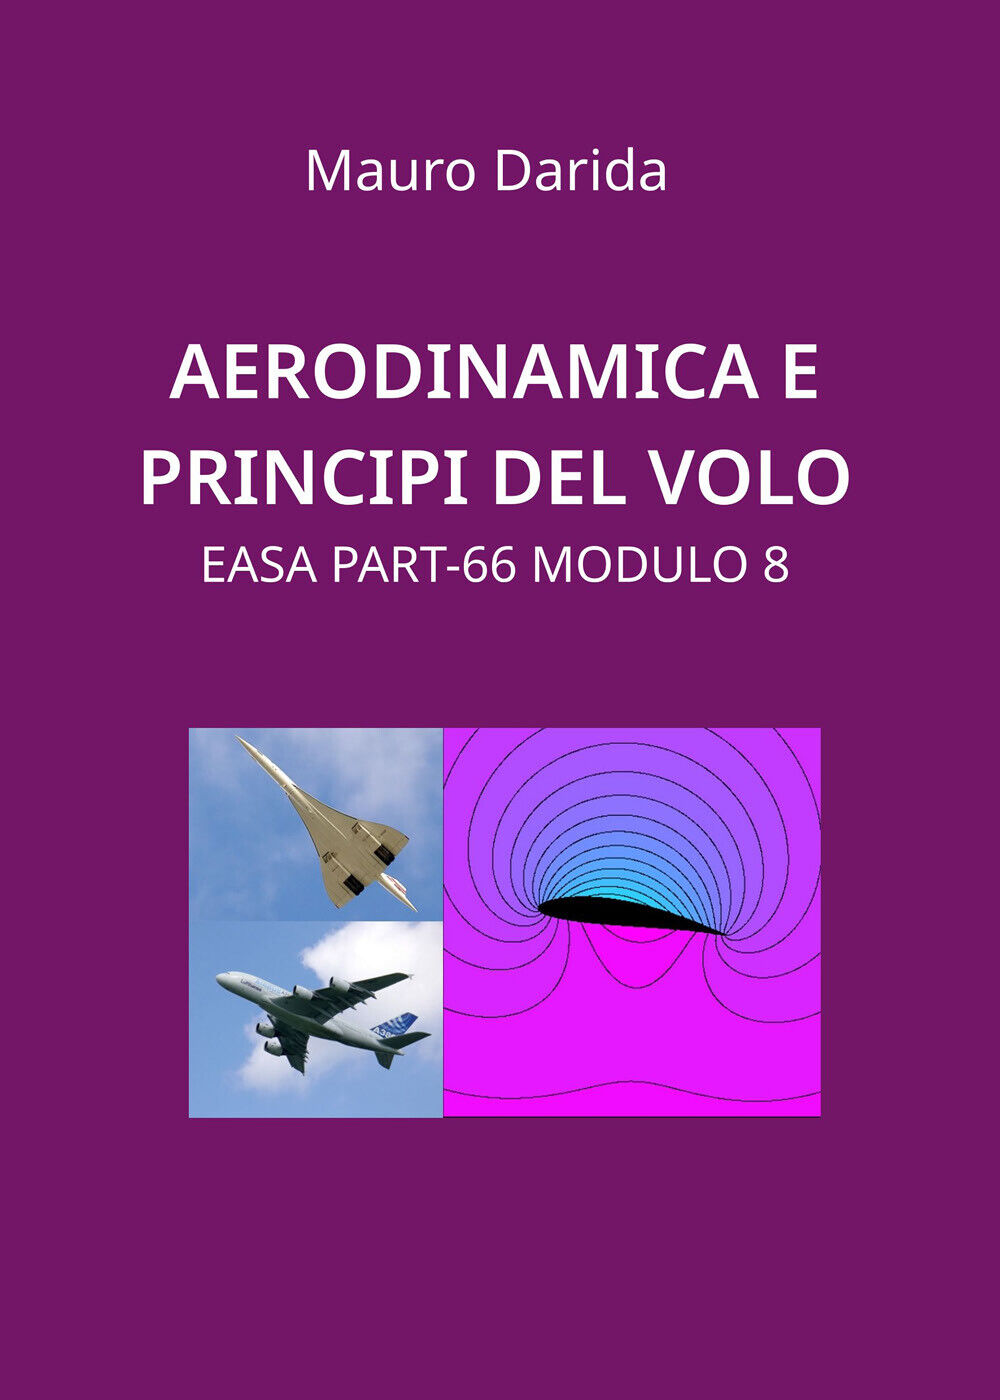 Aerodinamica e principi del volo. EASA Part-66 modulo 8 di Mauro Darida,  2020, 